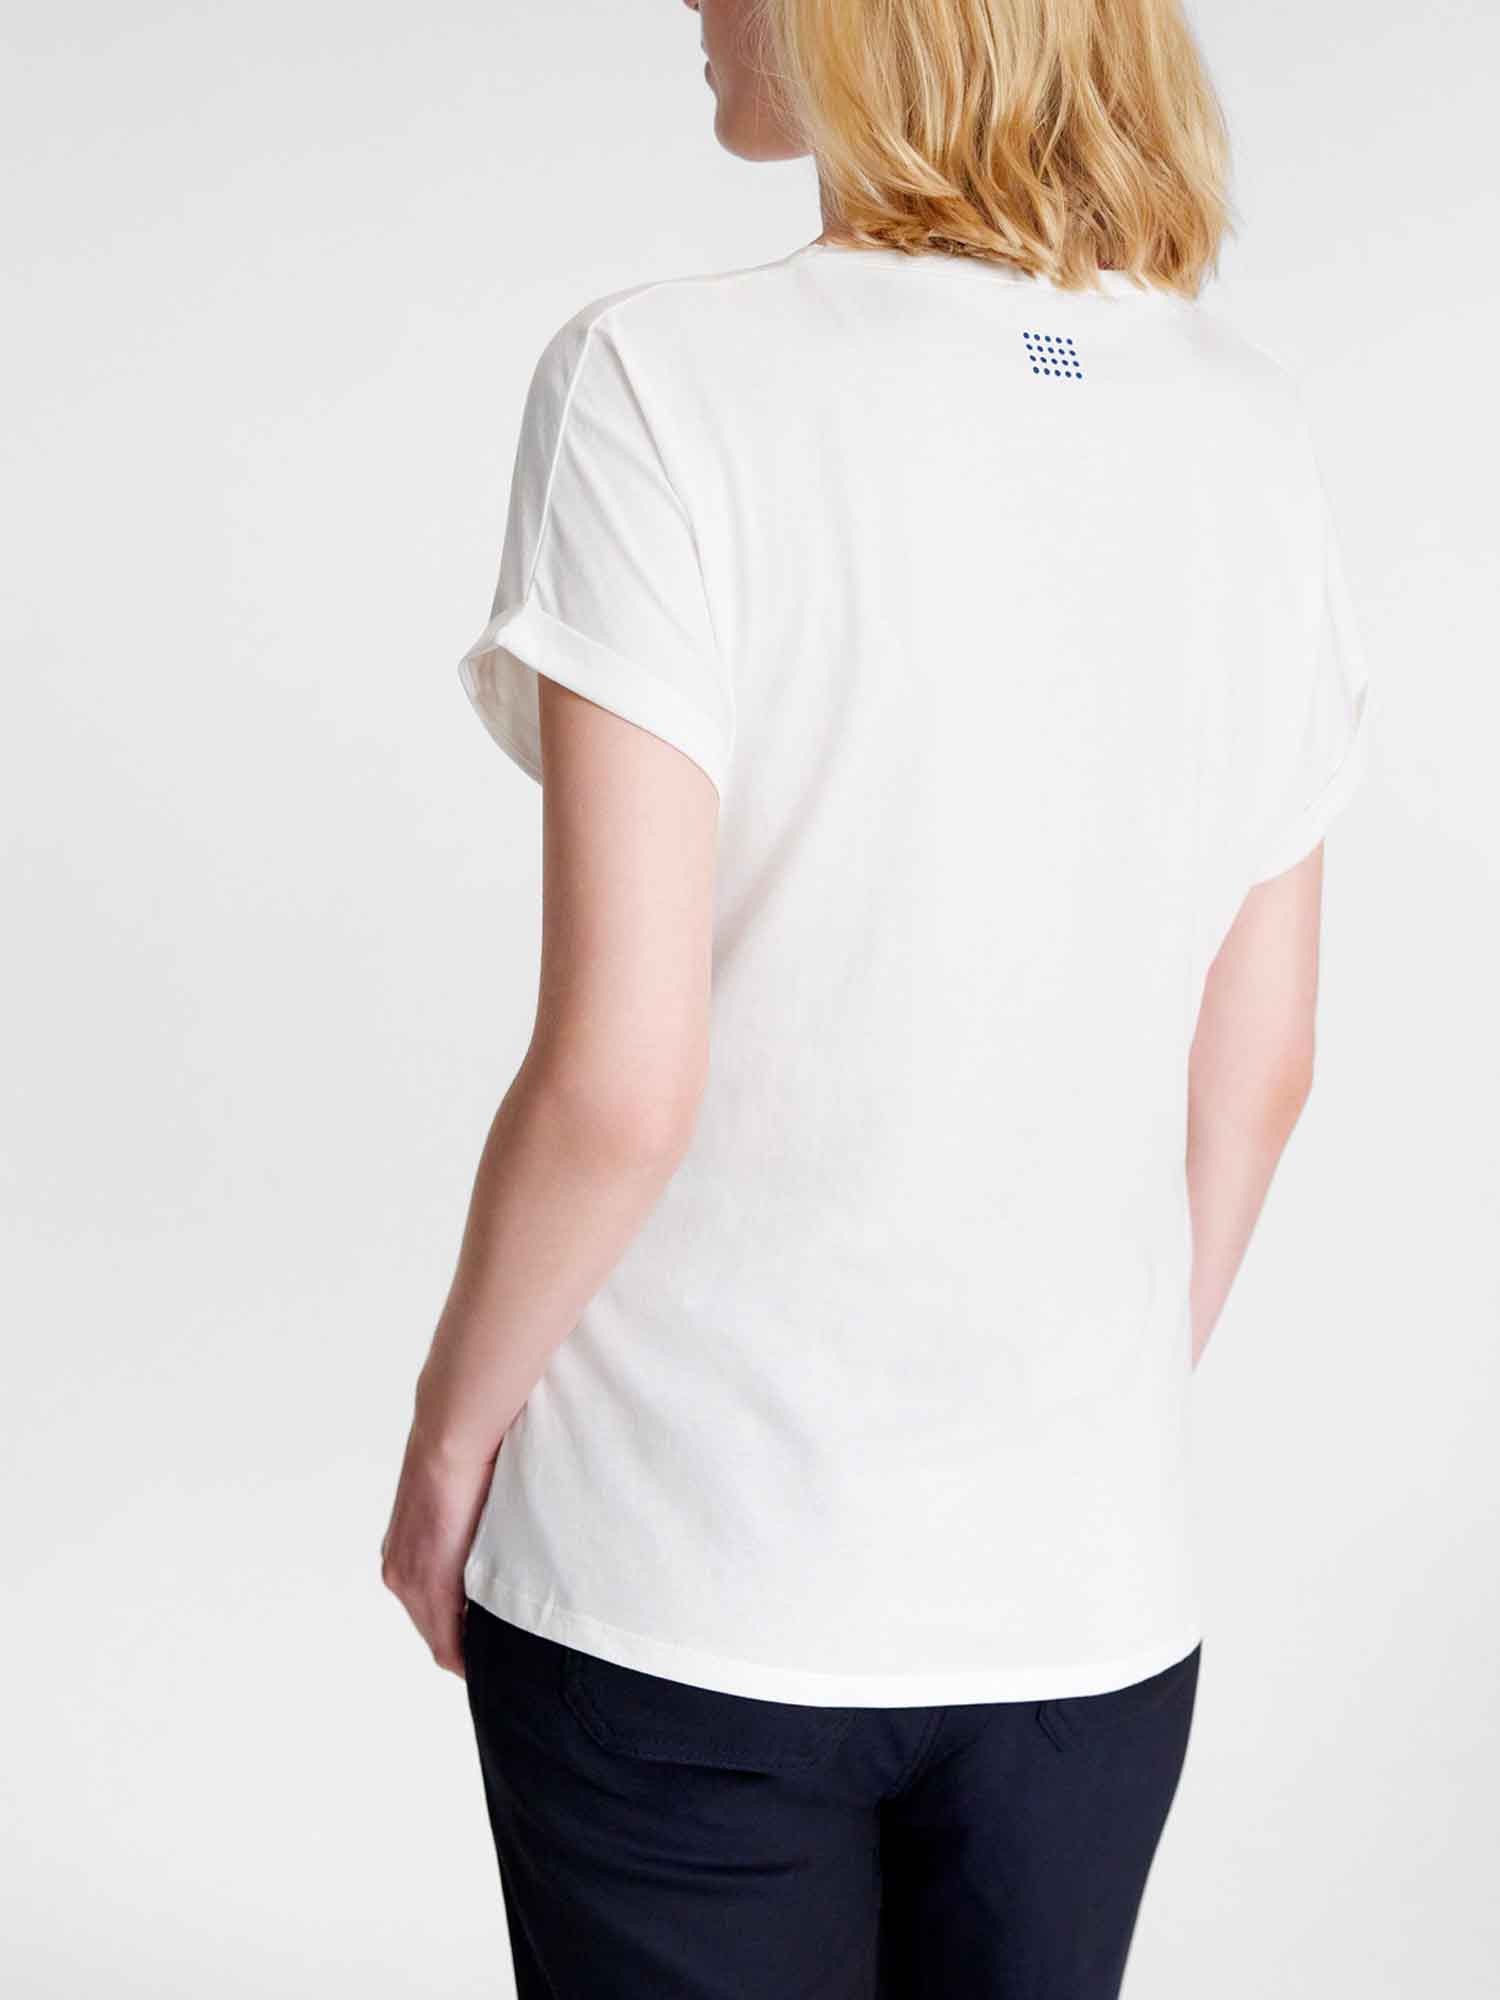 Tee-Shirt Femme Coton Biologique Blanc